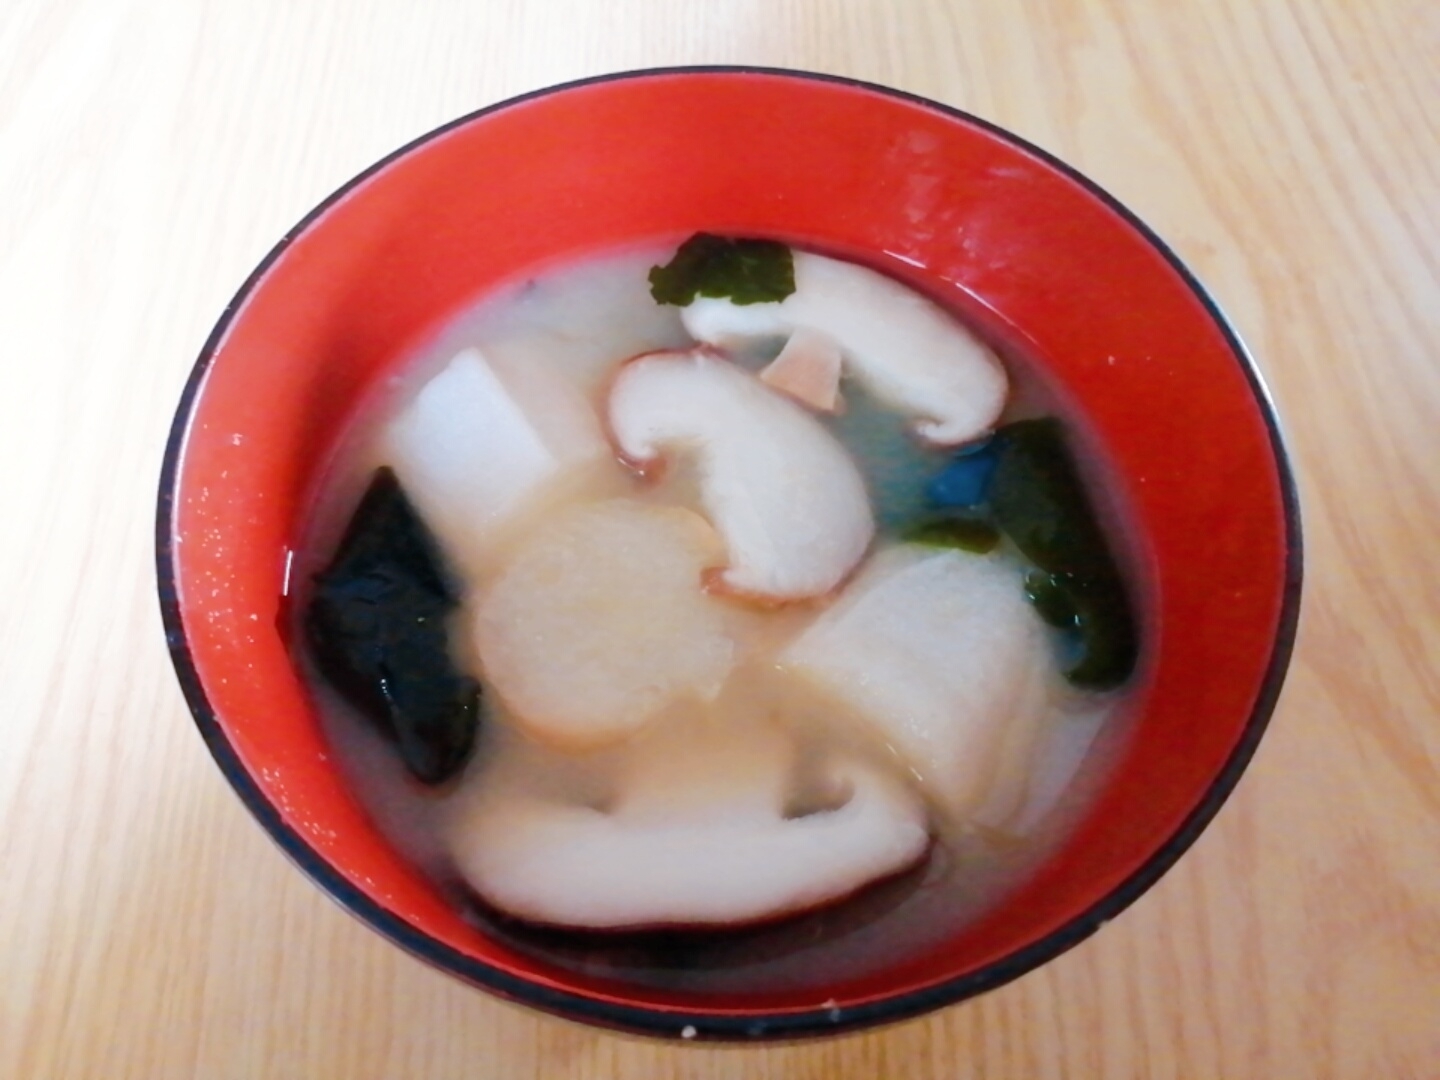 椎茸と麩とわかめの味噌汁